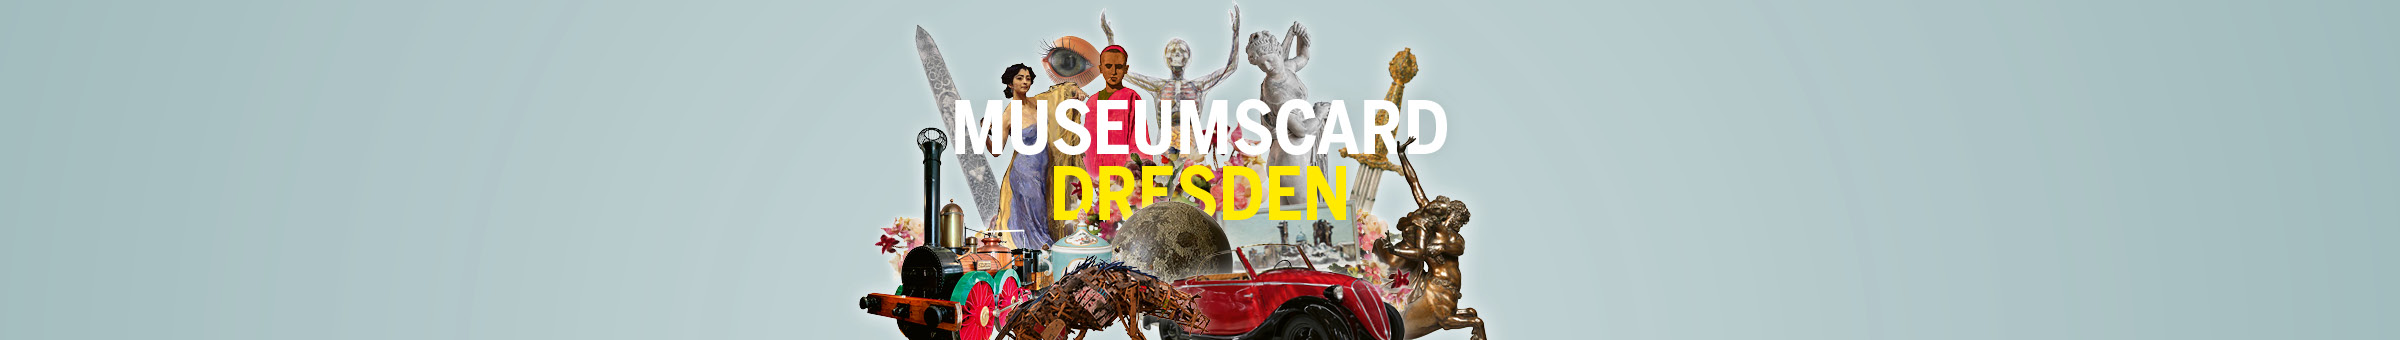 Das Motiv zur MuseumsCard Dresden zeigt Kunstwerke der teilnehmenden Museen und Ausstellungen.